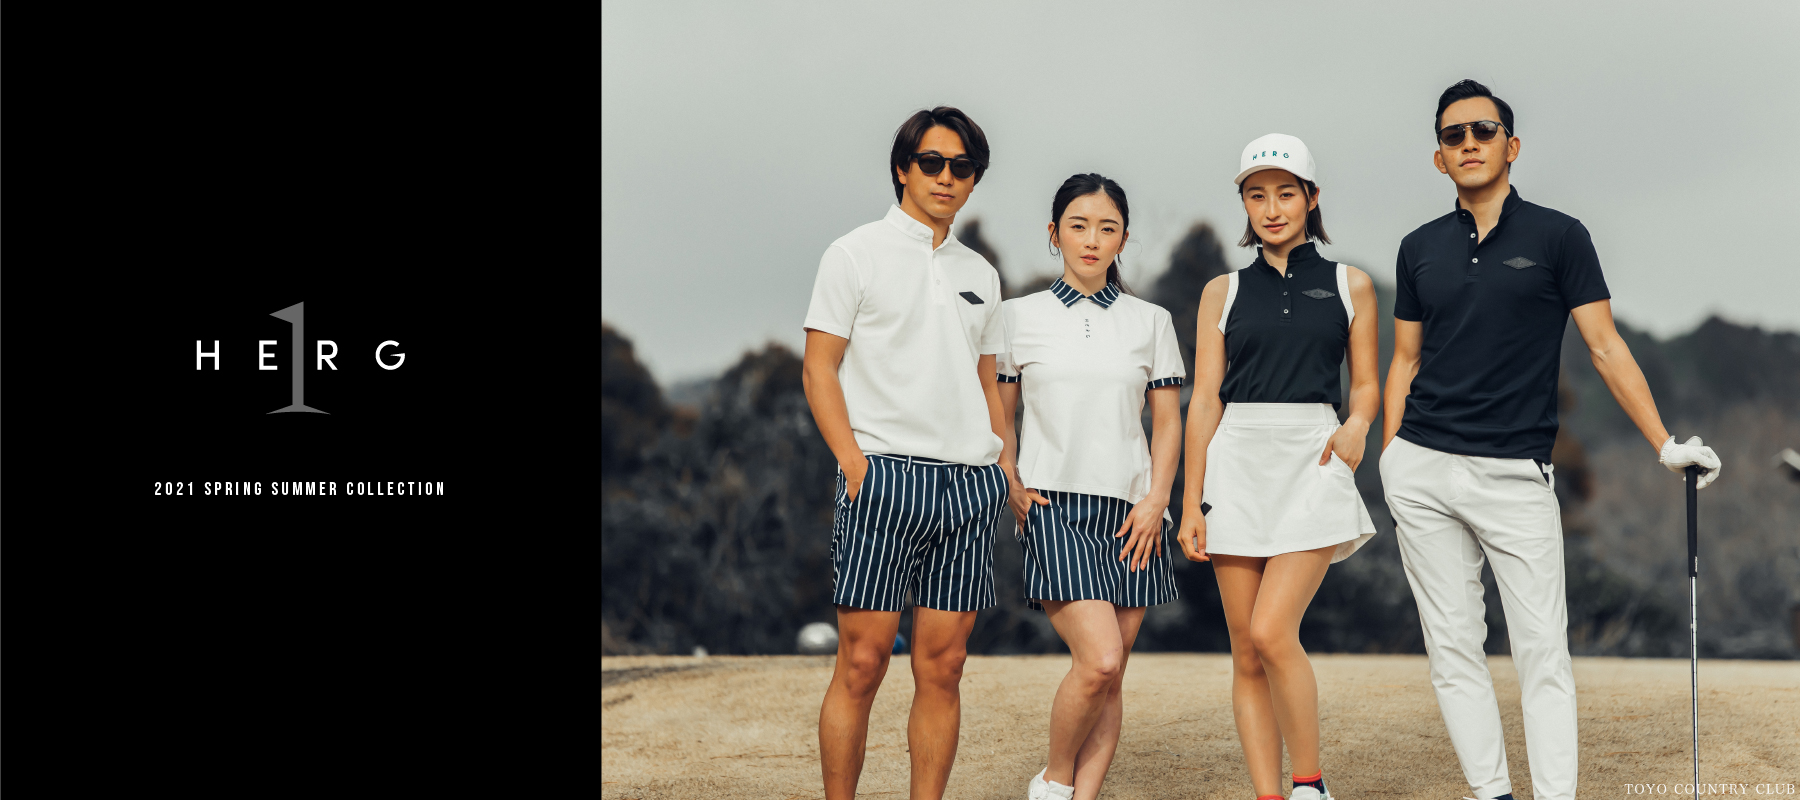 ゴルフウェア 新ブランドherg1 エルグワン が本格始動 一般社団法人 Tokyo Athletic Unitedのプレスリリース